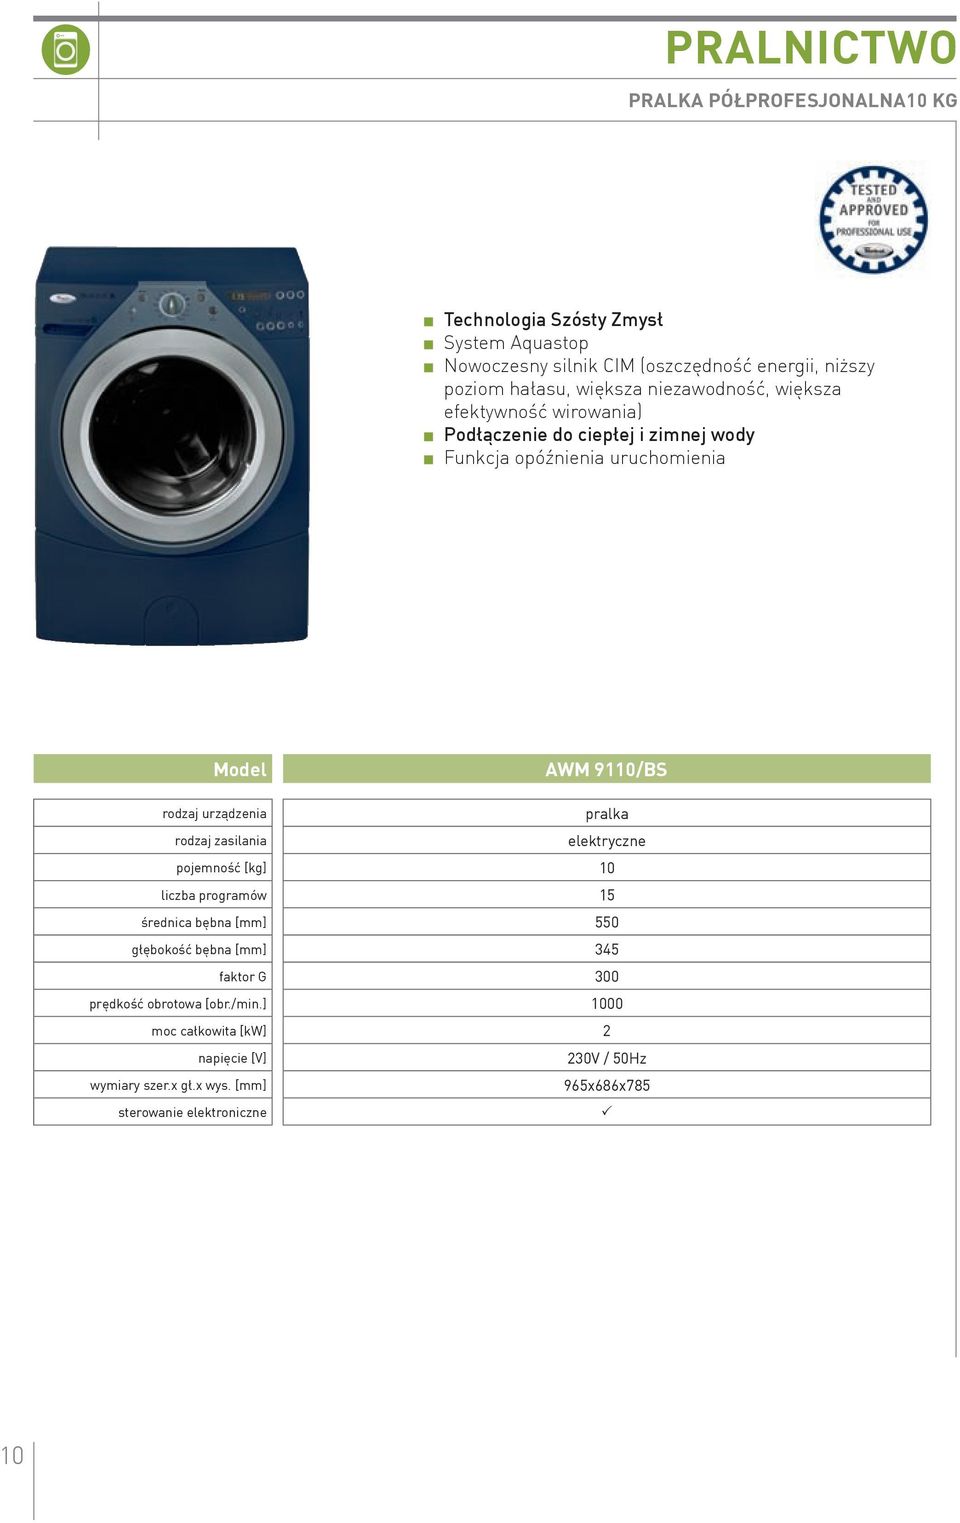 9110/Bs rodzaj urządzenia pralka rodzaj zasilania elektryczne pojemność [kg] 10 liczba programów 15 średnica bębna [mm] 550 głębokość bębna